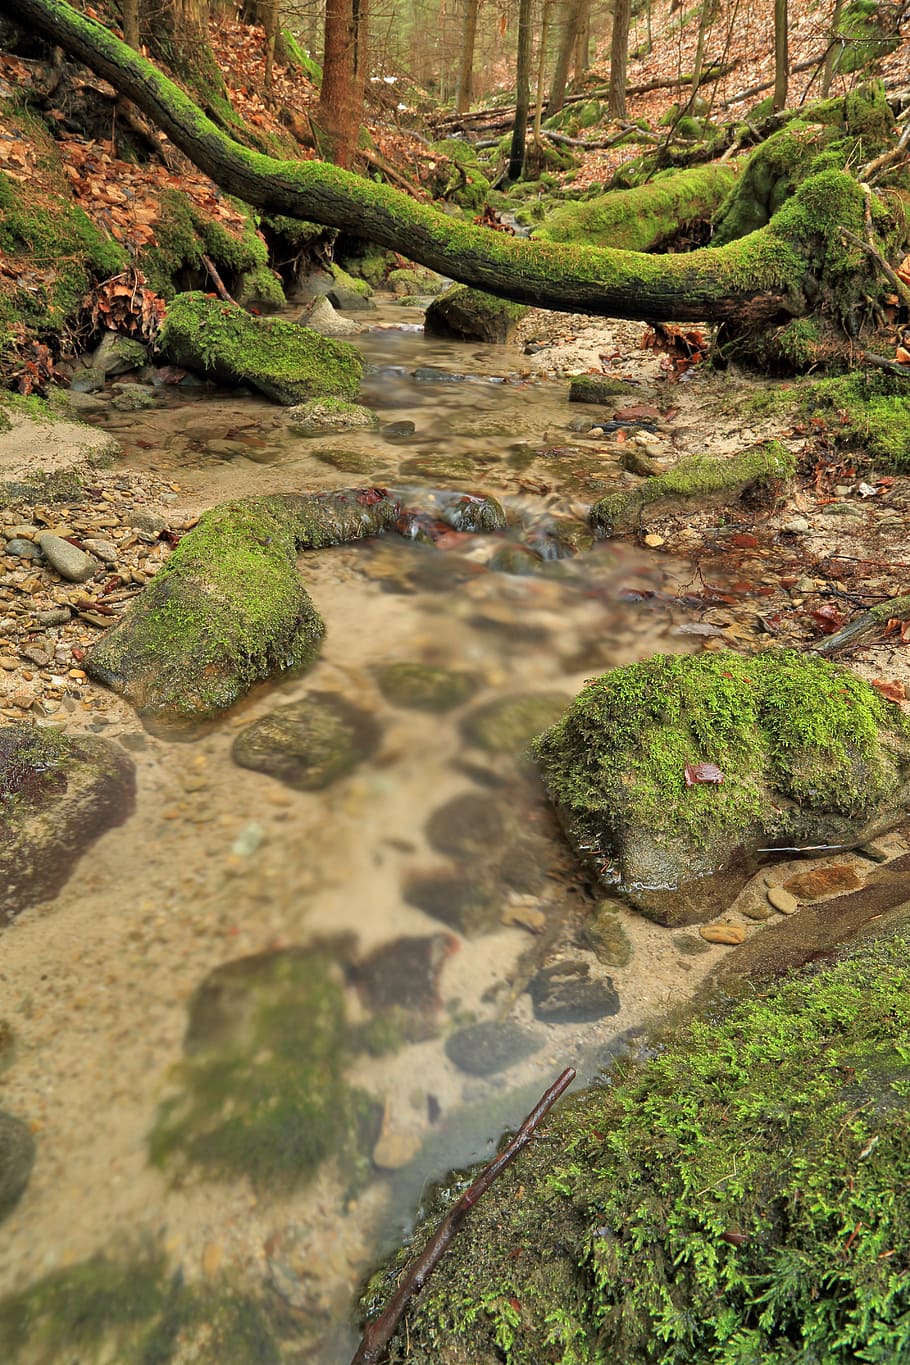 corriente, torrente, agua, naturaleza, el arroyo, arroyo, árbol, las piedras, que fluye, cubierto de vegetación